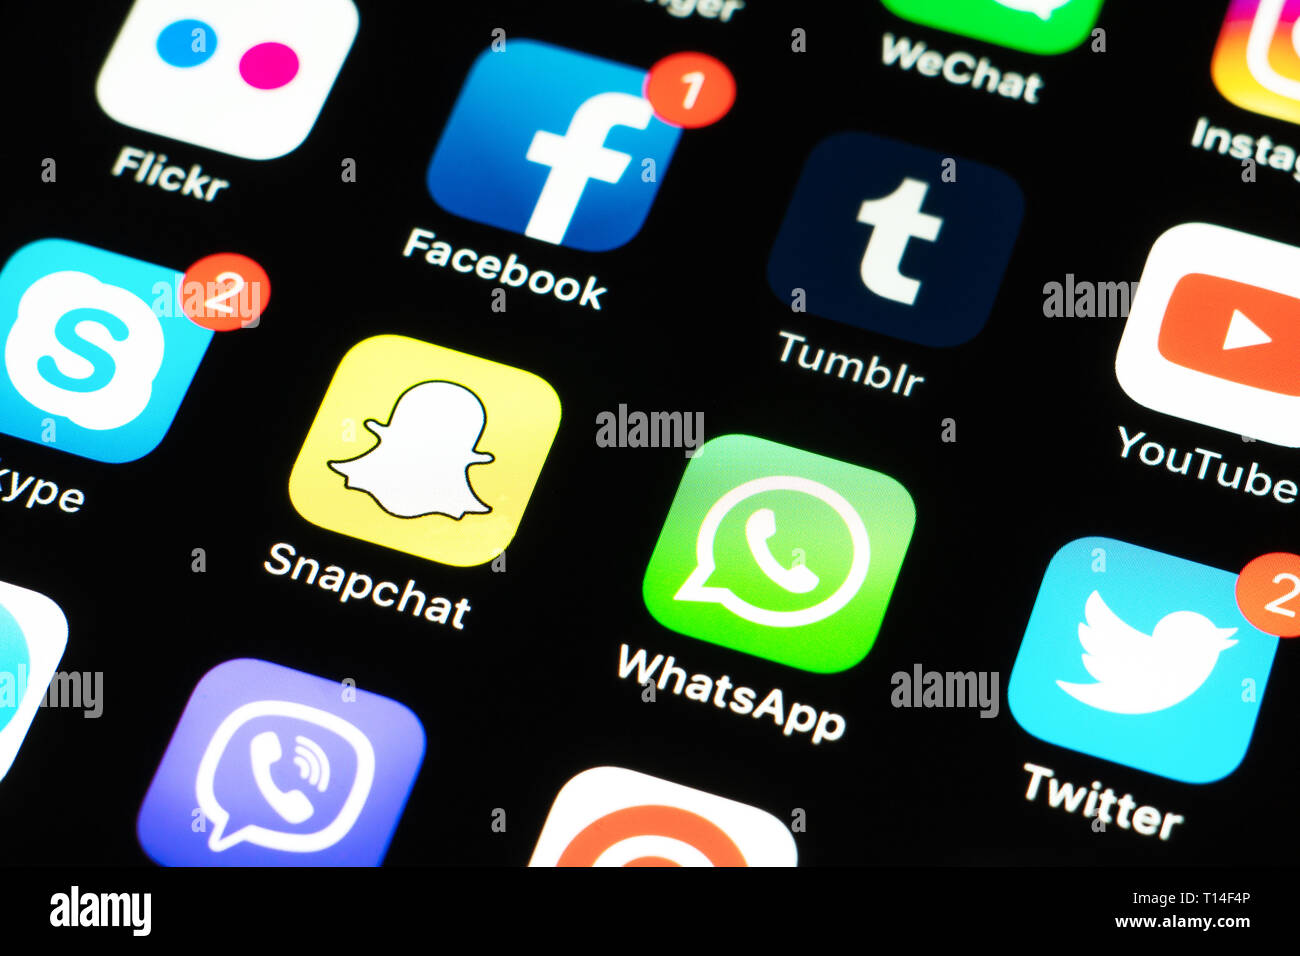 Apple iPhone X mit Ikonen der Social Media Facebook, Instagram, Twitter, snapchat, Telegramm und anderen Anwendungen auf dem Bildschirm. Social media Icons Stockfoto